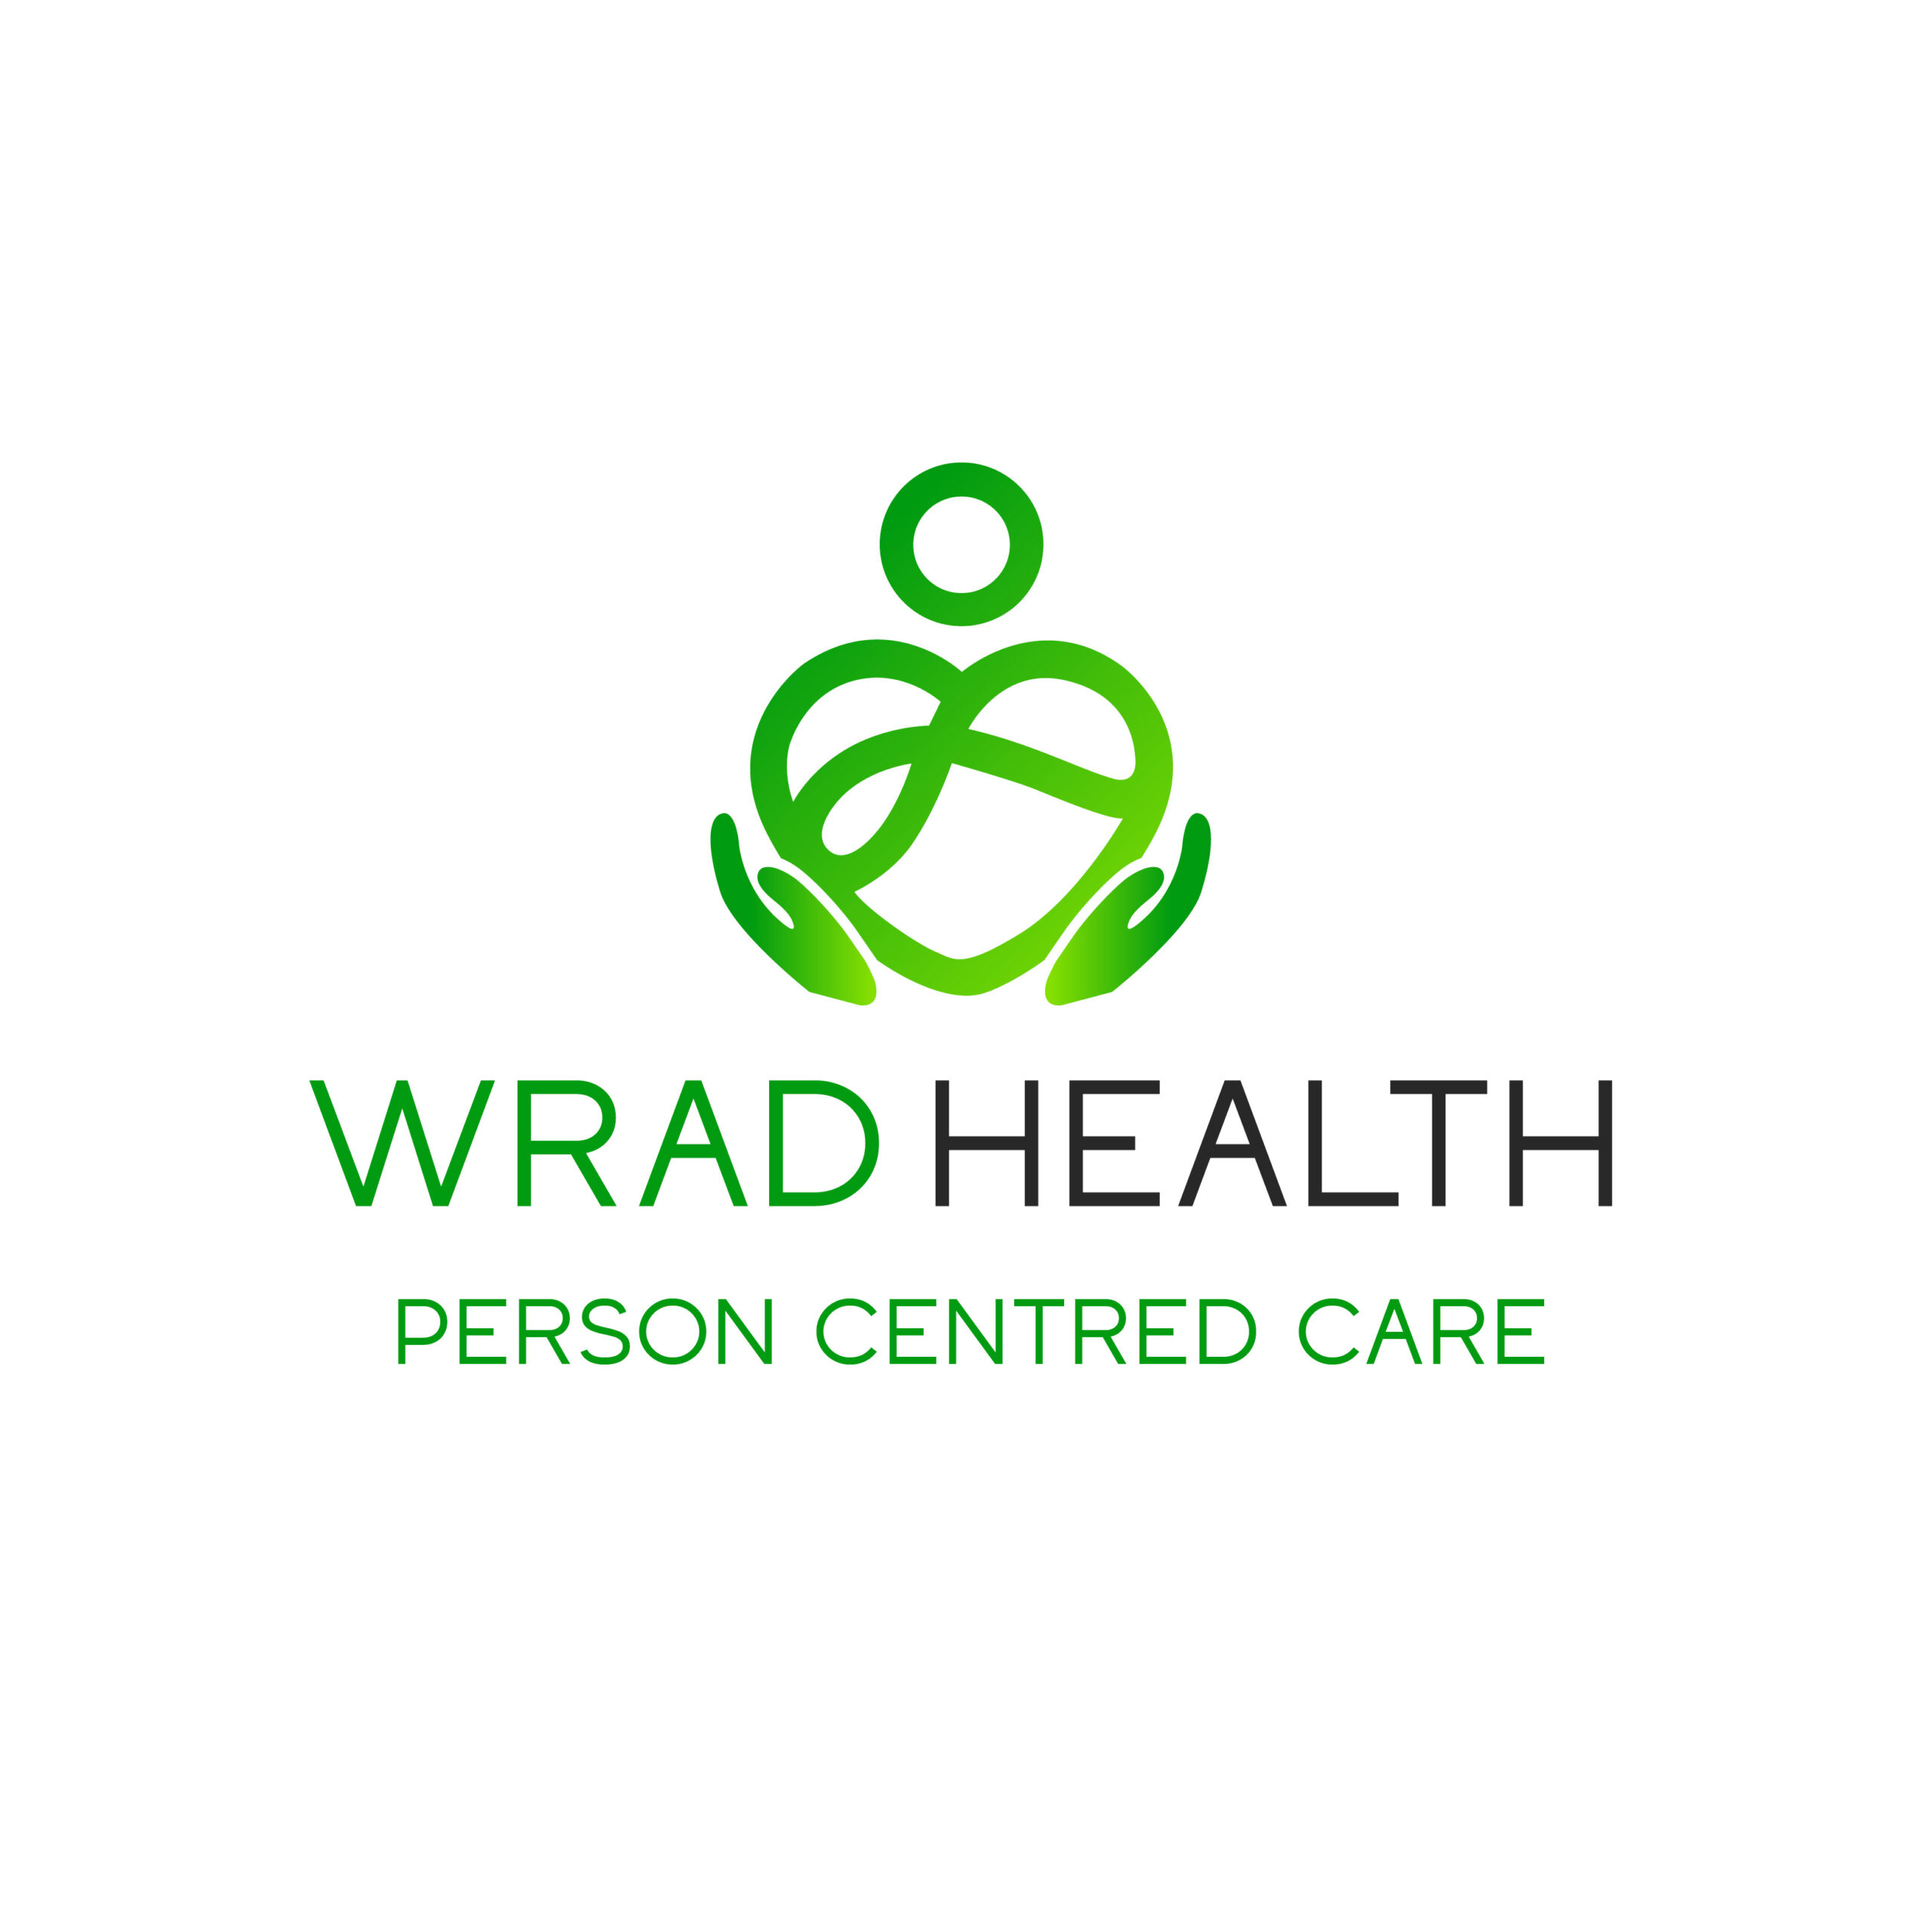 WRAD HEALTH Trademark